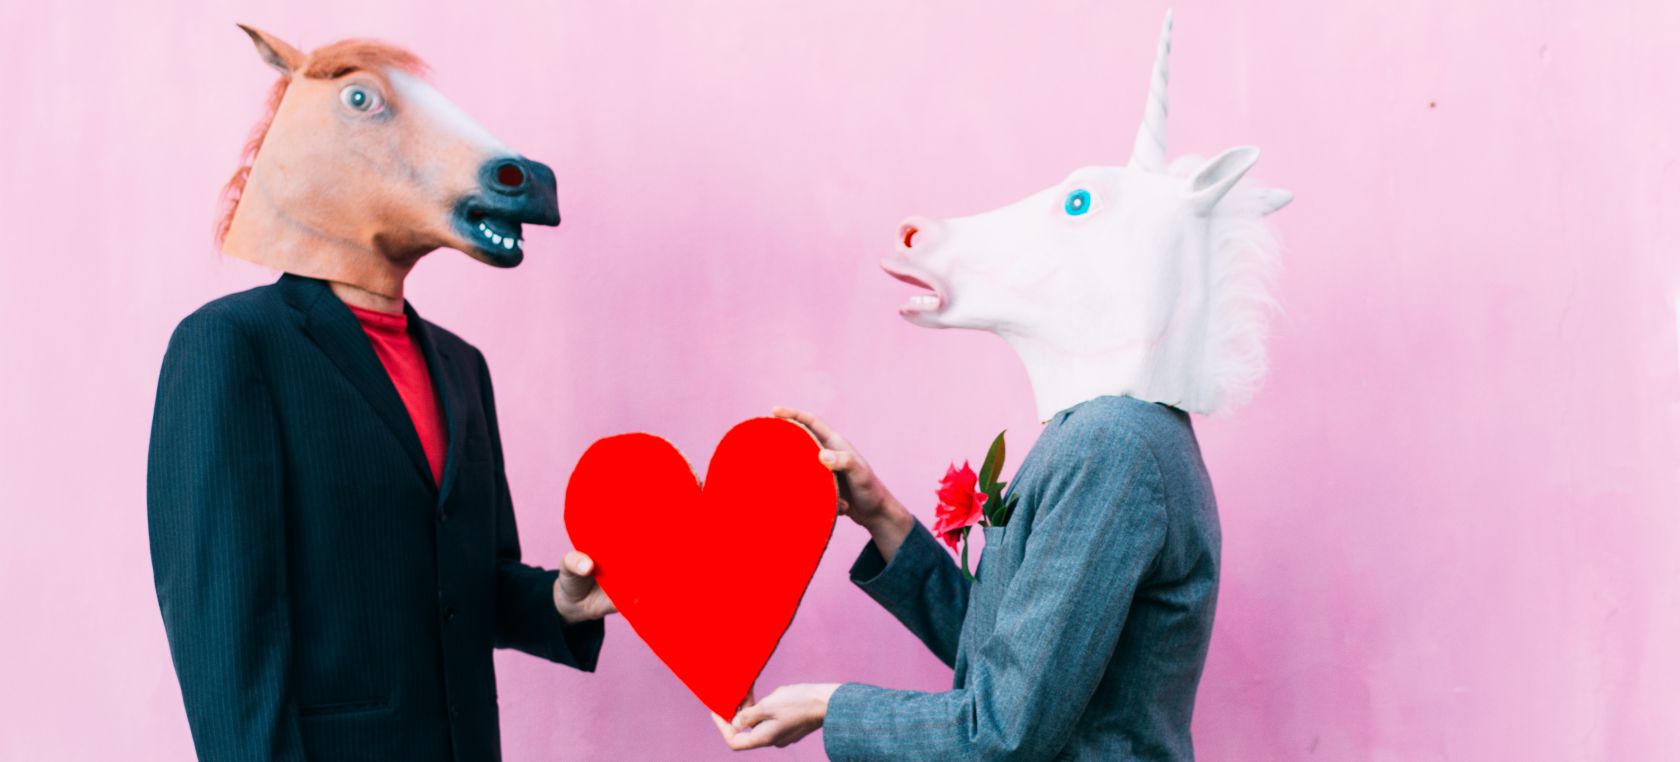 Los mejores memes sobre San (y Sam) Valentín para reírse el Día de los enamorados